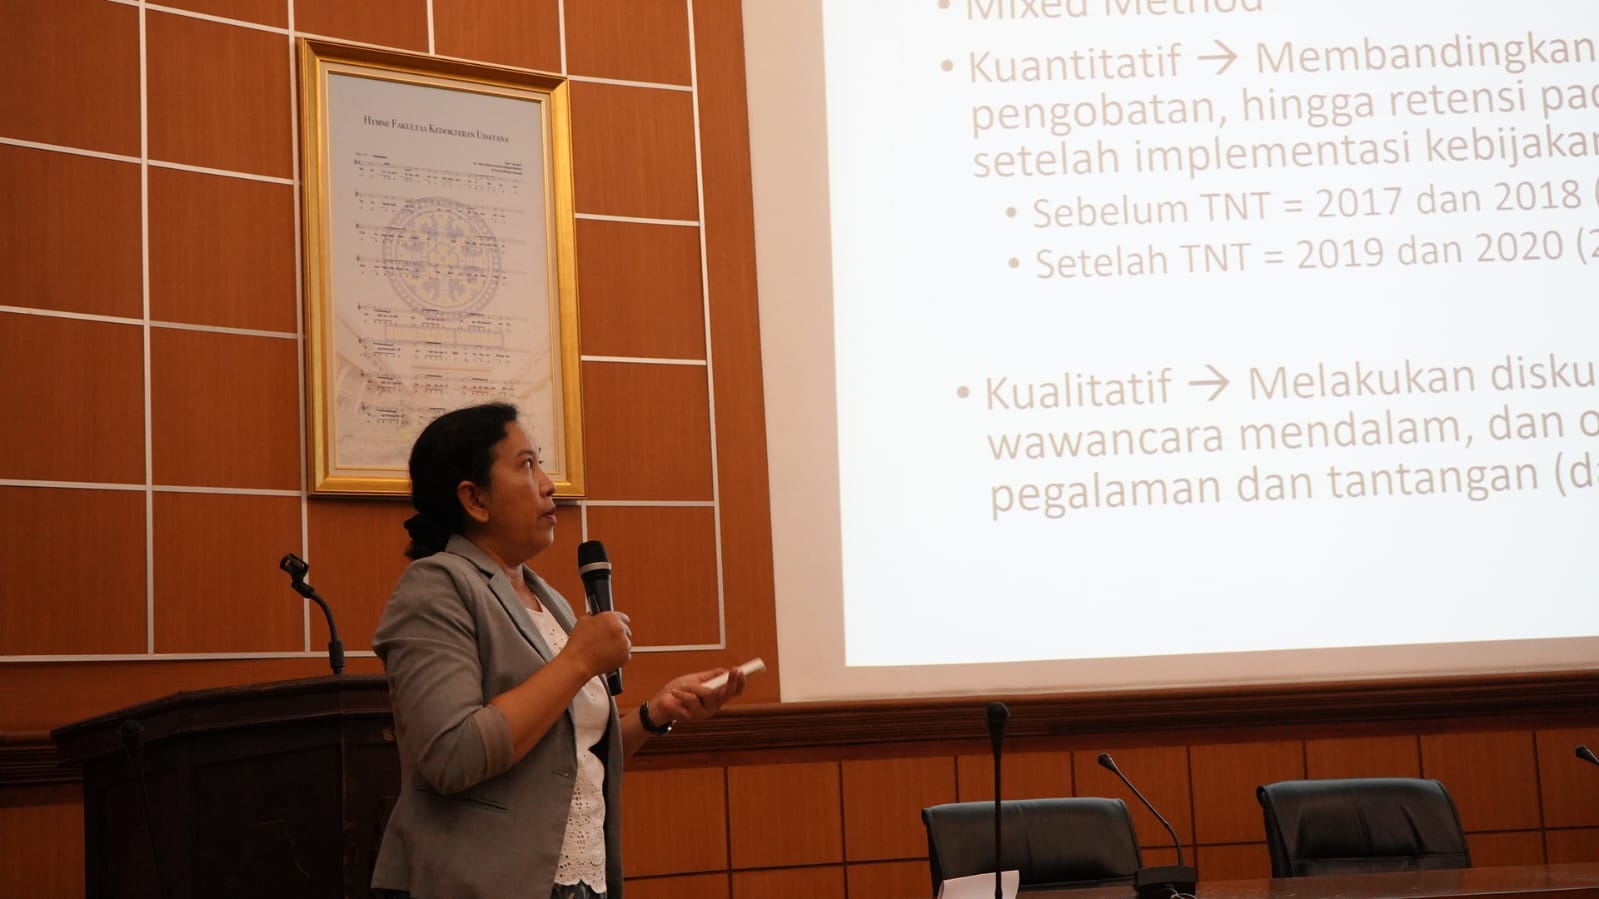 Diseminasi Hasil Evaluasi Implementasi Kebijakan Test and Treat HIV/AIDS di Indonesia